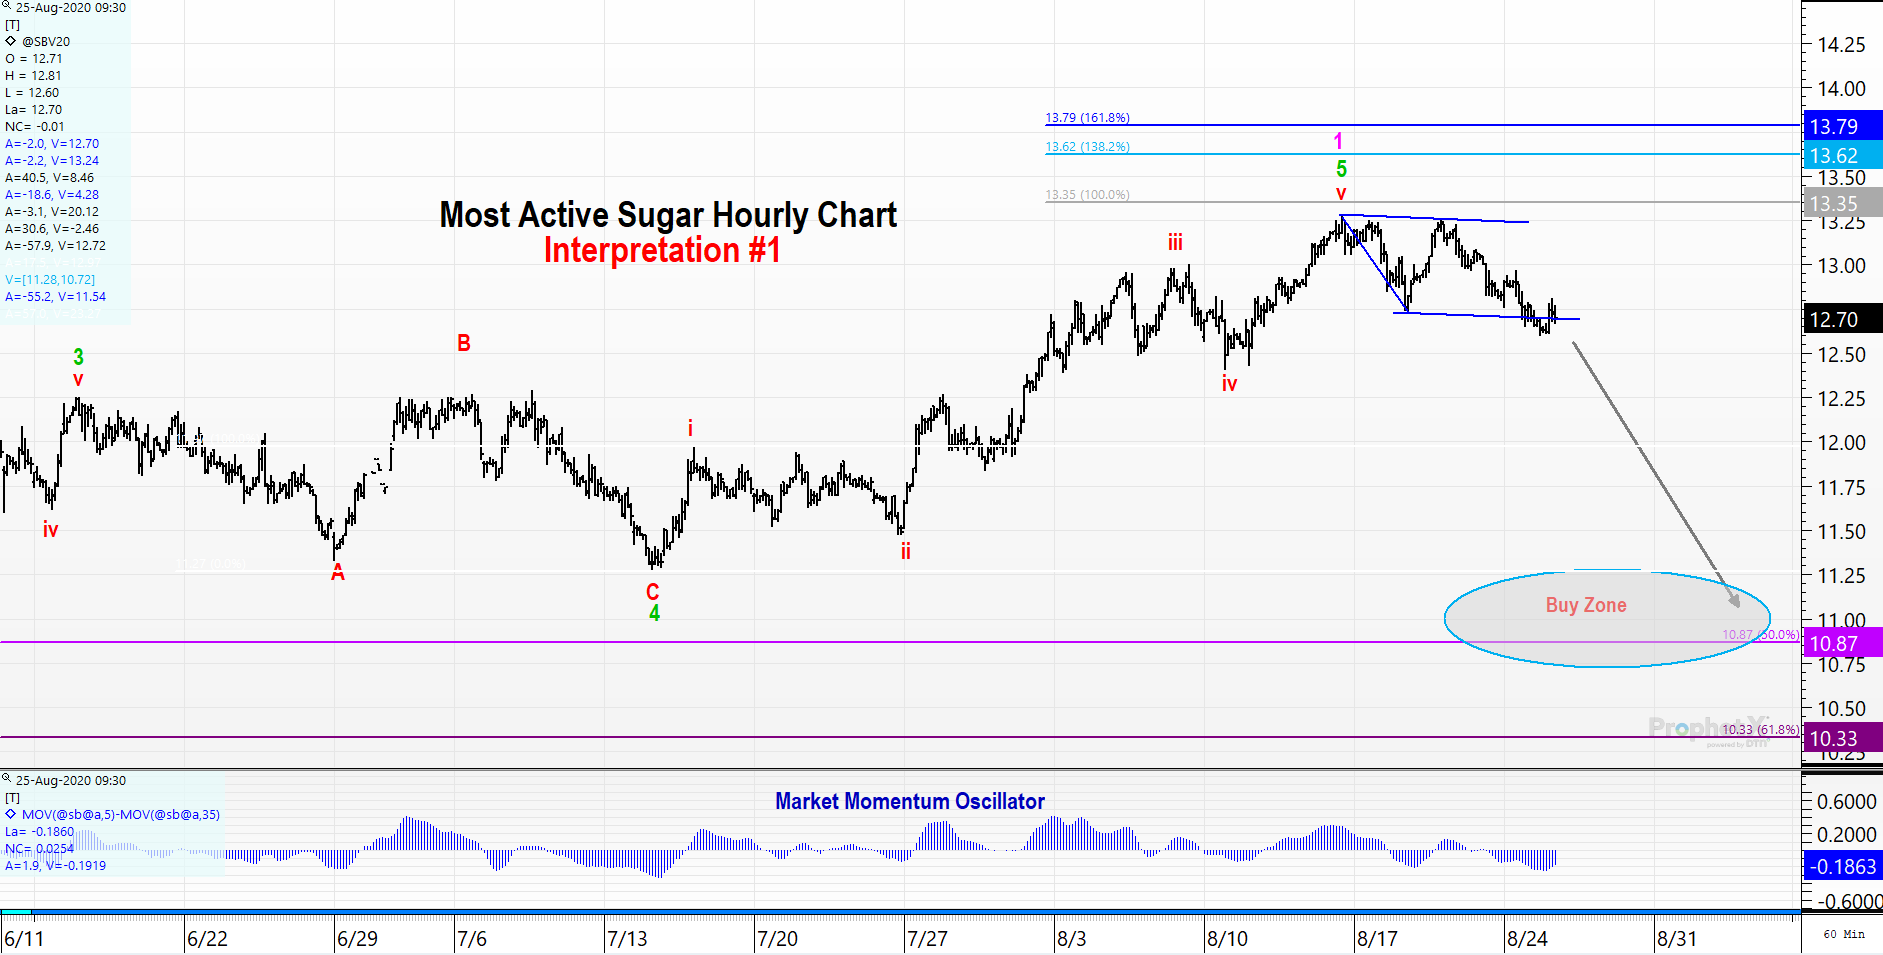 Sugar Futures Wave Interpretation 1